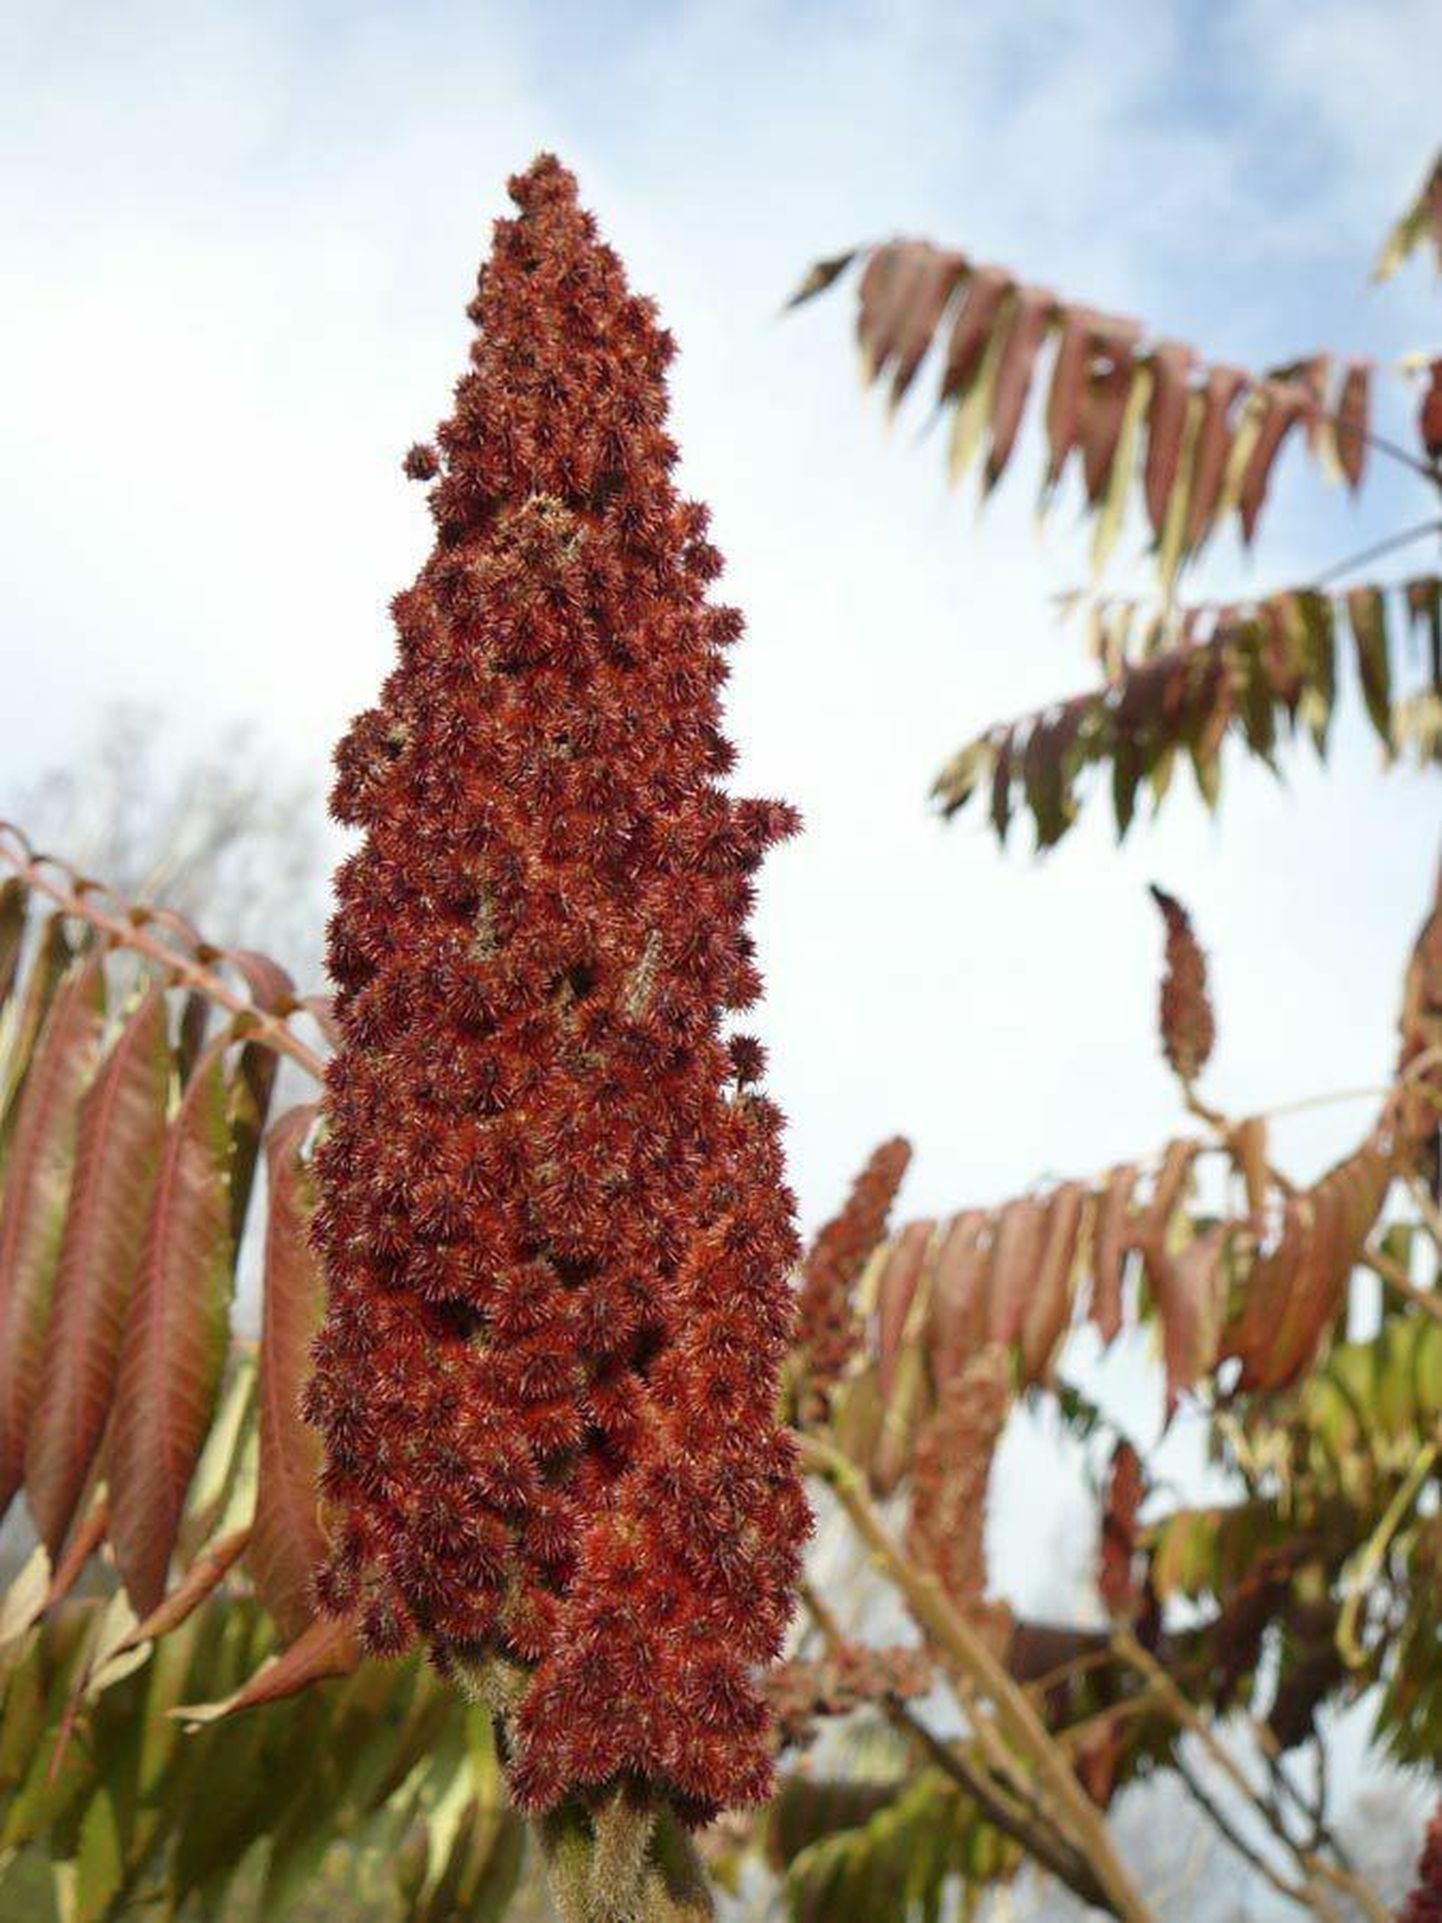 Äädikapuu võib kasvada üsna kõrgeks. Sügisel kaunistavad seda punased püstised viljapöörised, mis püsivad kevadeni.